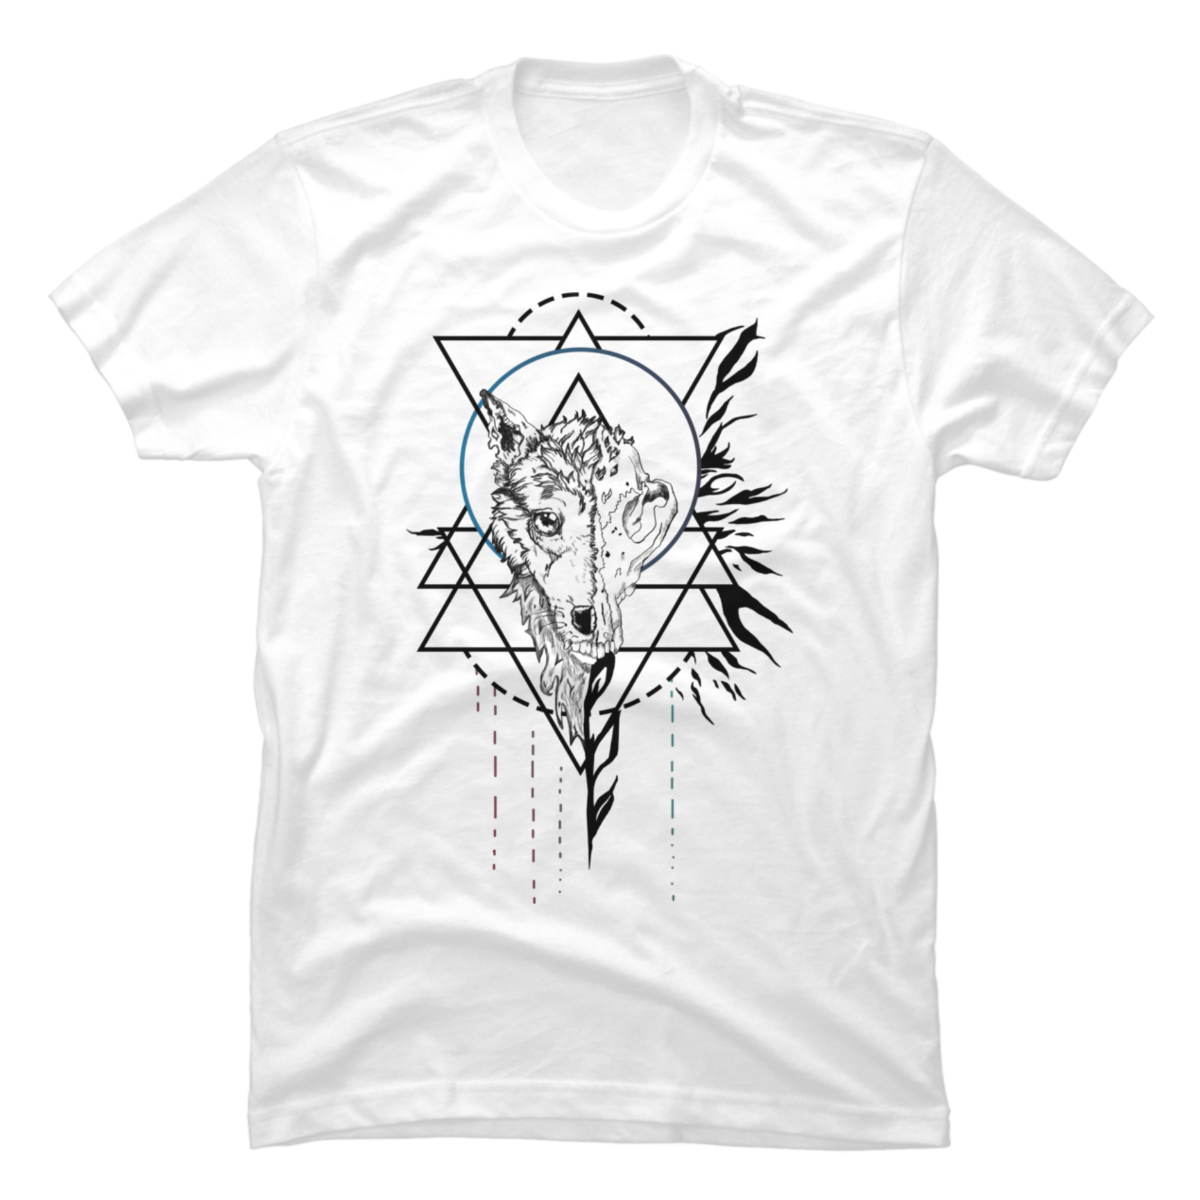 Wolf skull,Wolf skullpresent tshirt - Buy t-shirt designs